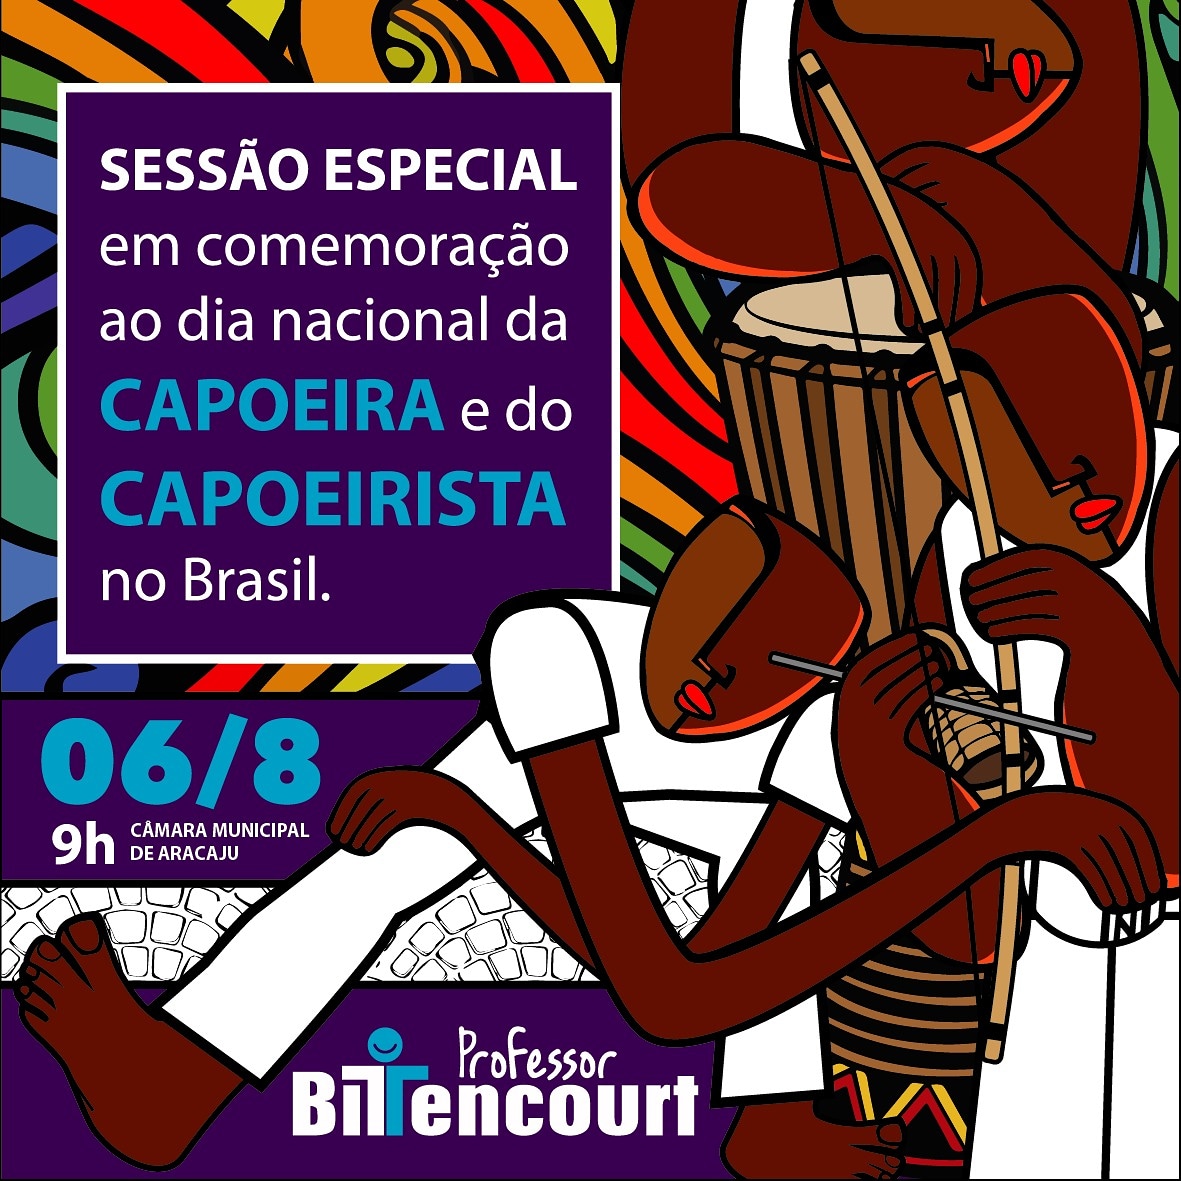 Sessão Especial pelo Dia da Capoeira e do Capoeirista acontece na próxima segunda-feira